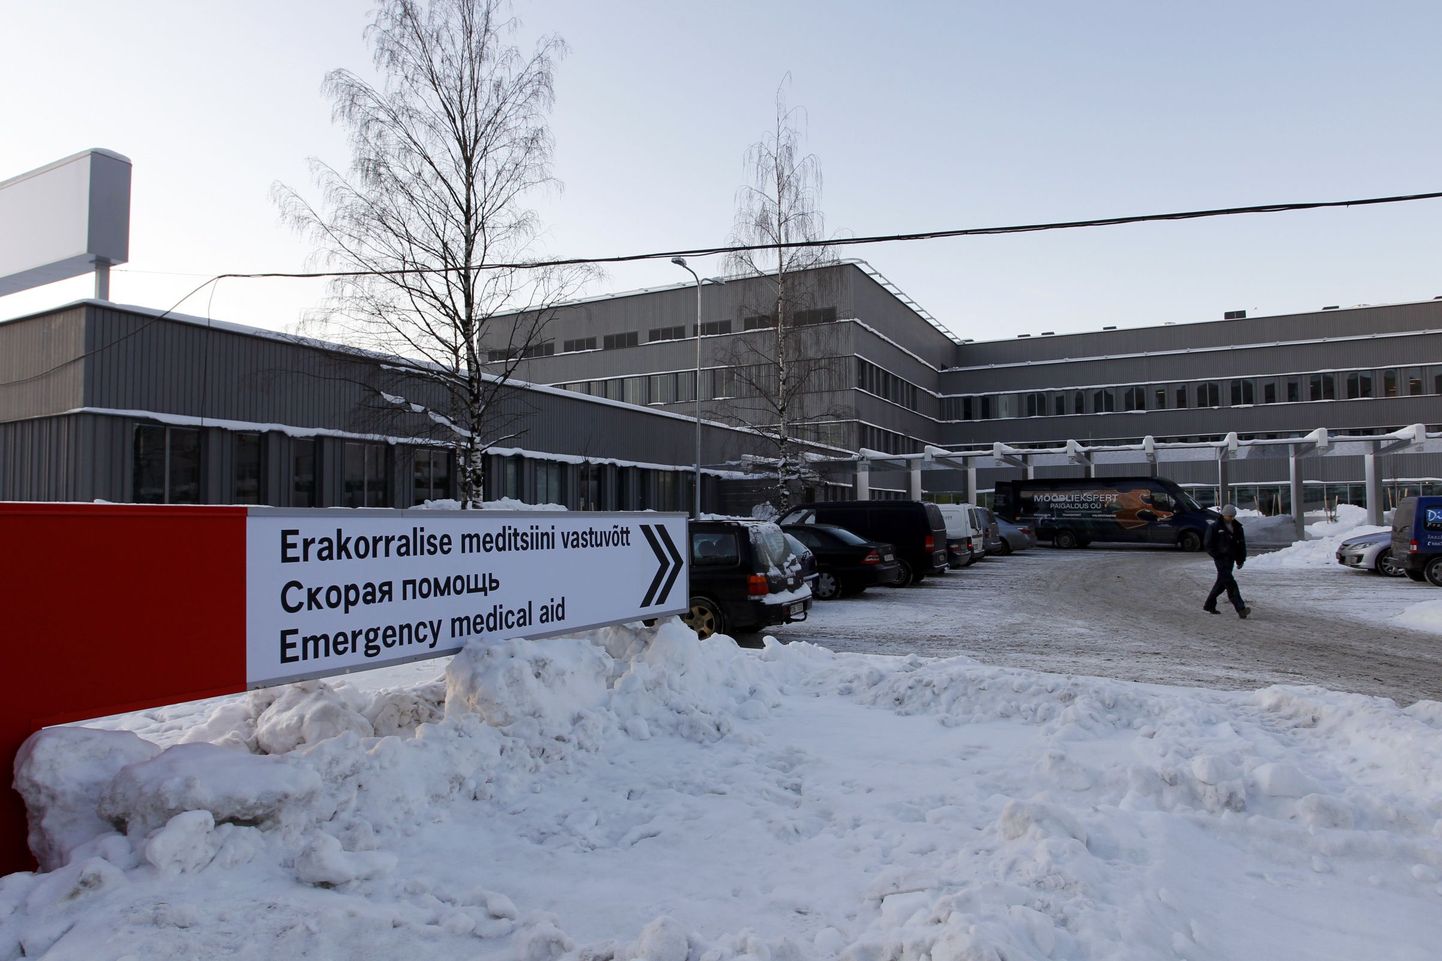 Ka Põhja-Eesti Regionaalhaigla erakorralise meditsiini keskus kolis uutesse ruumidesse vastavatud X- korpuses.